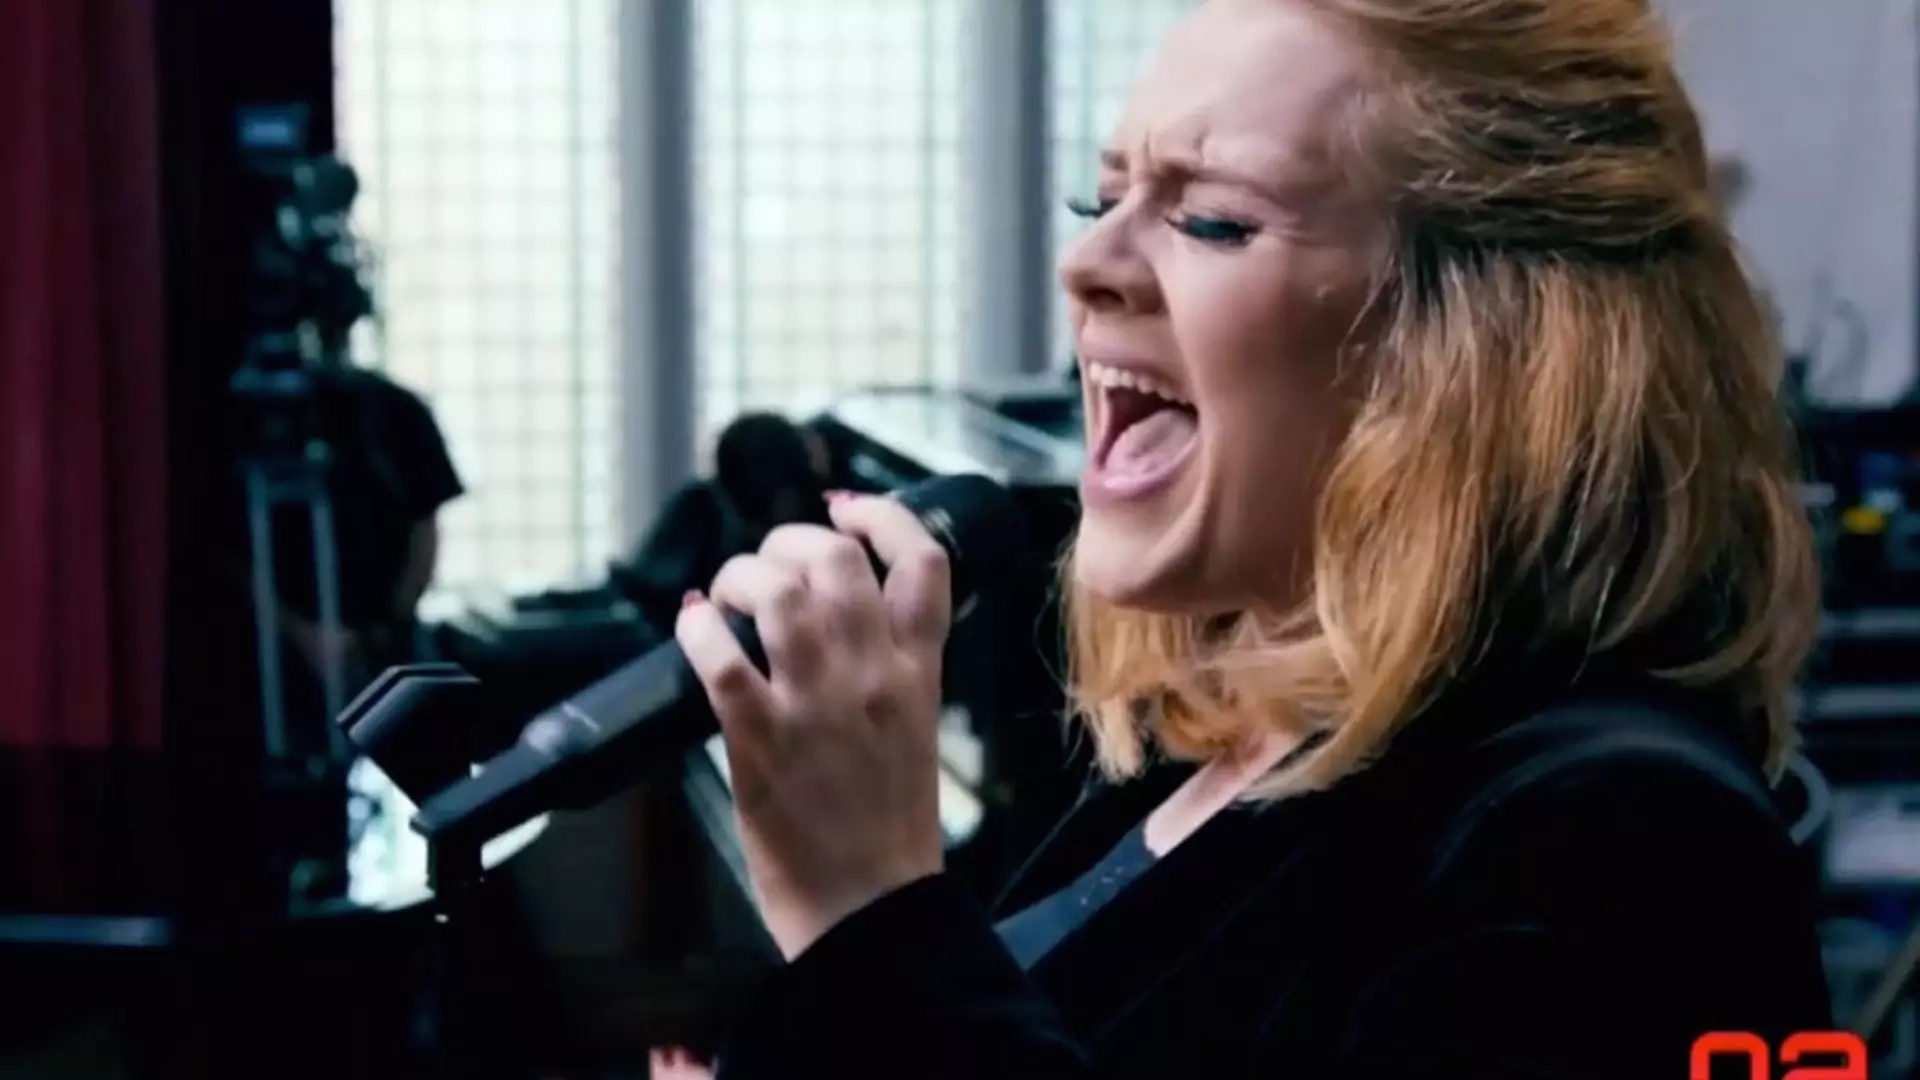 Kolejna piosenka Adele w sieci - wzruszająca i nostalgiczna! Posłuchajcie